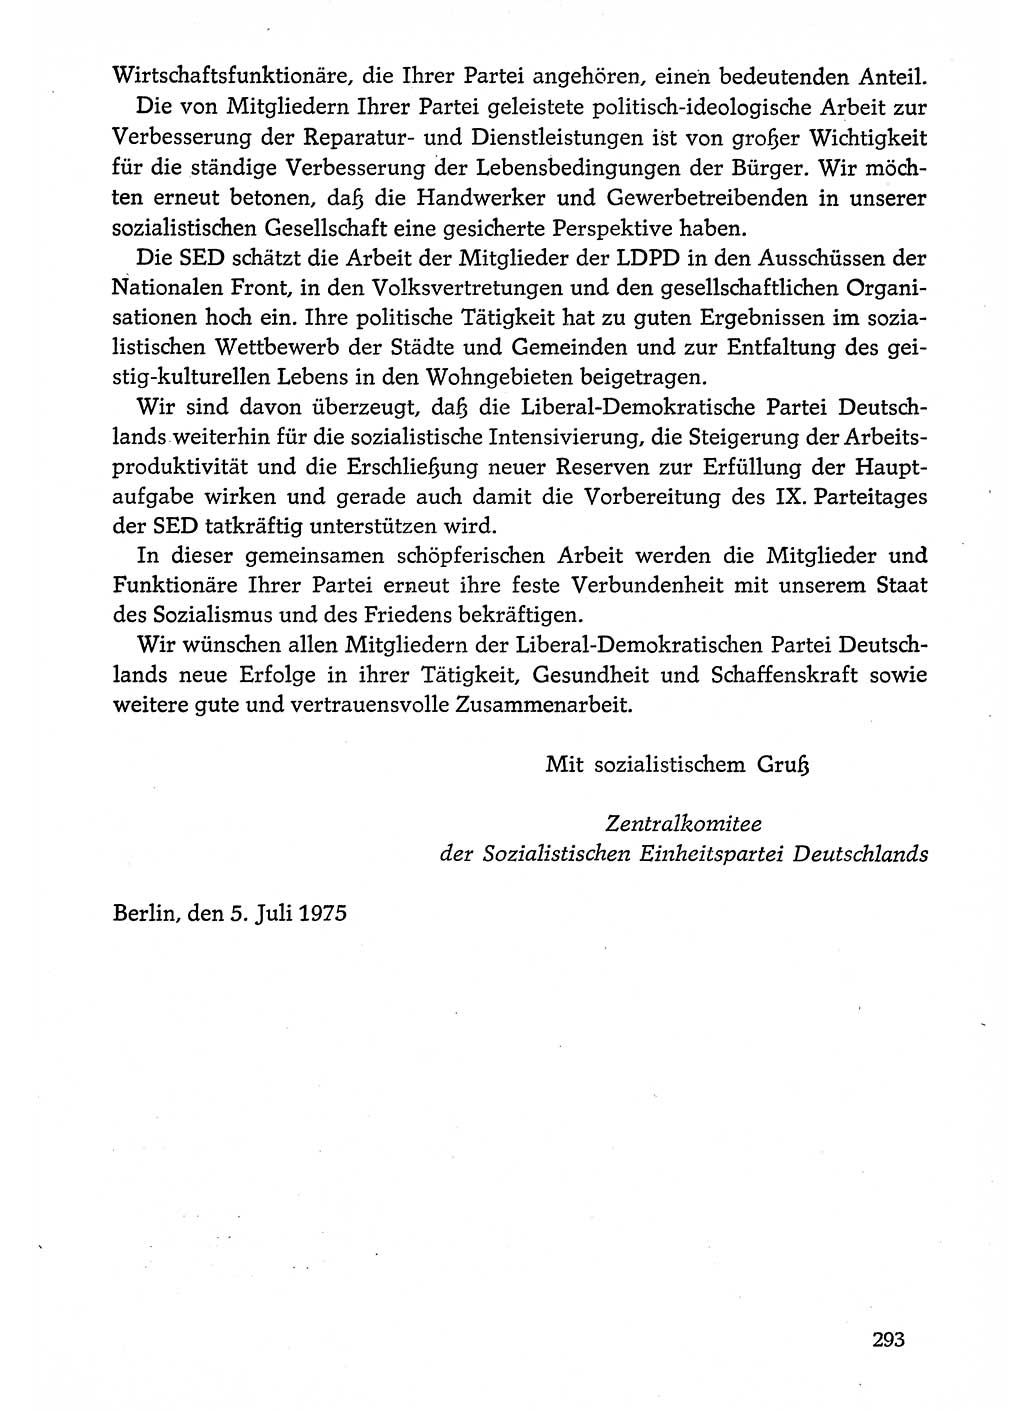 Dokumente der Sozialistischen Einheitspartei Deutschlands (SED) [Deutsche Demokratische Republik (DDR)] 1974-1975, Seite 293 (Dok. SED DDR 1978, Bd. ⅩⅤ, S. 293)